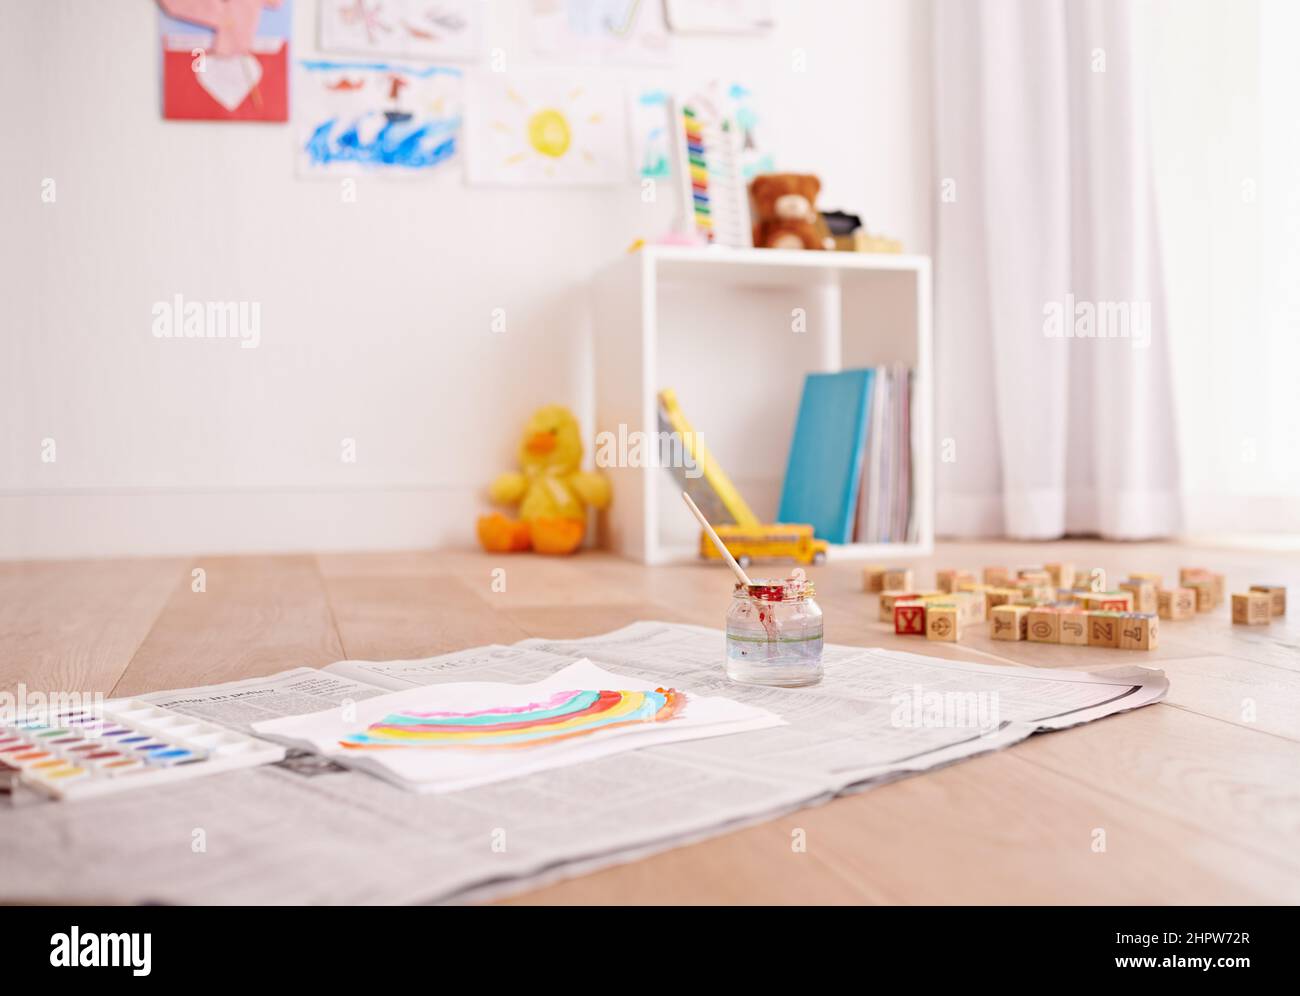 Bereit, kreativ zu werden. Aufnahme von Kinderbemalungen auf dem Boden eines Kinderzimmers. Stockfoto